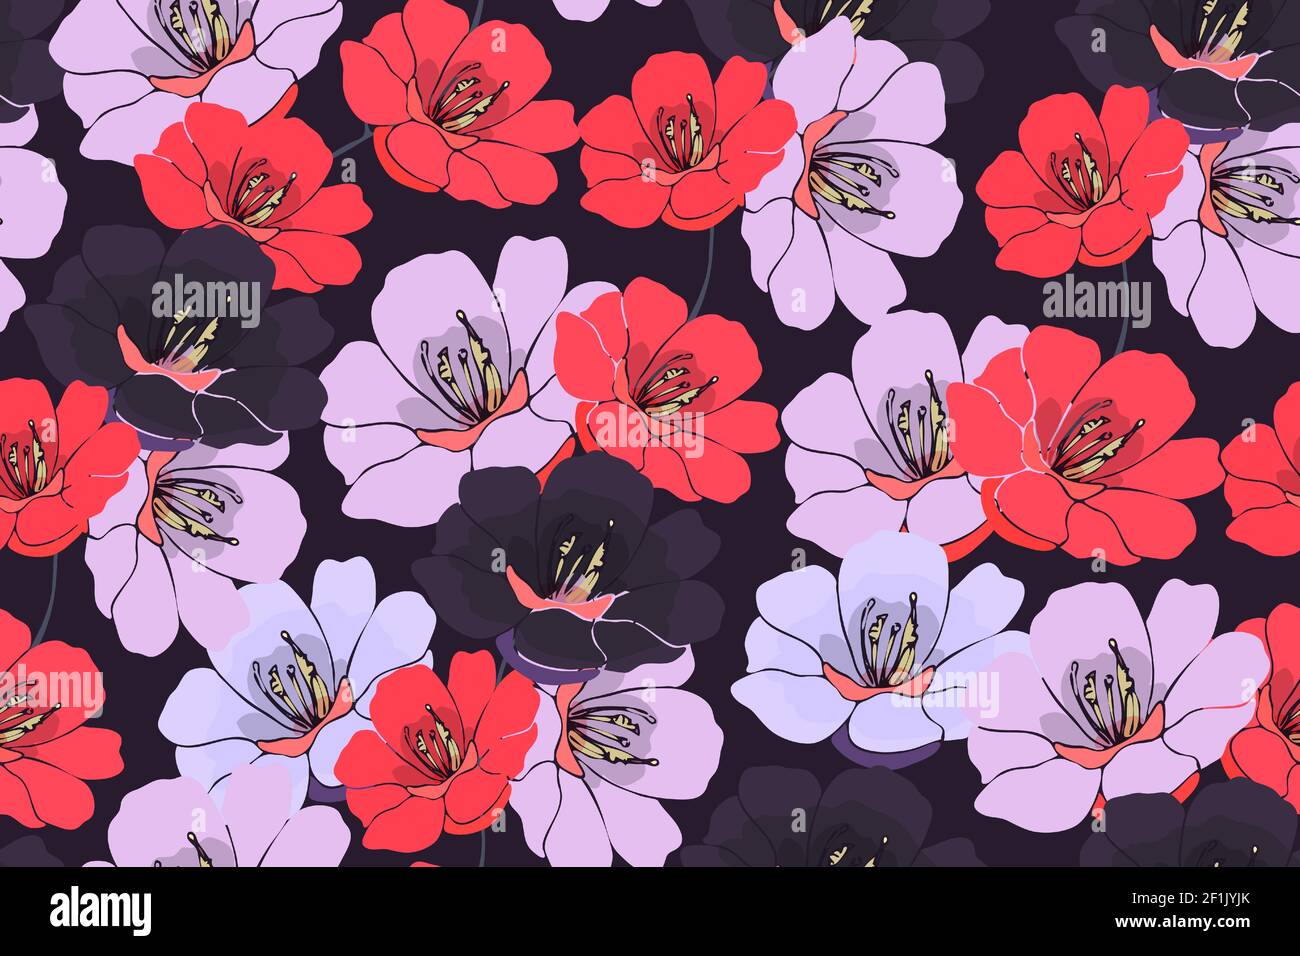 Vektor florale Nahtloses Muster. Rosa, rote, dunkelviolette Blüten isoliert auf einem dunkelvioletten Hintergrund. Stock Vektor